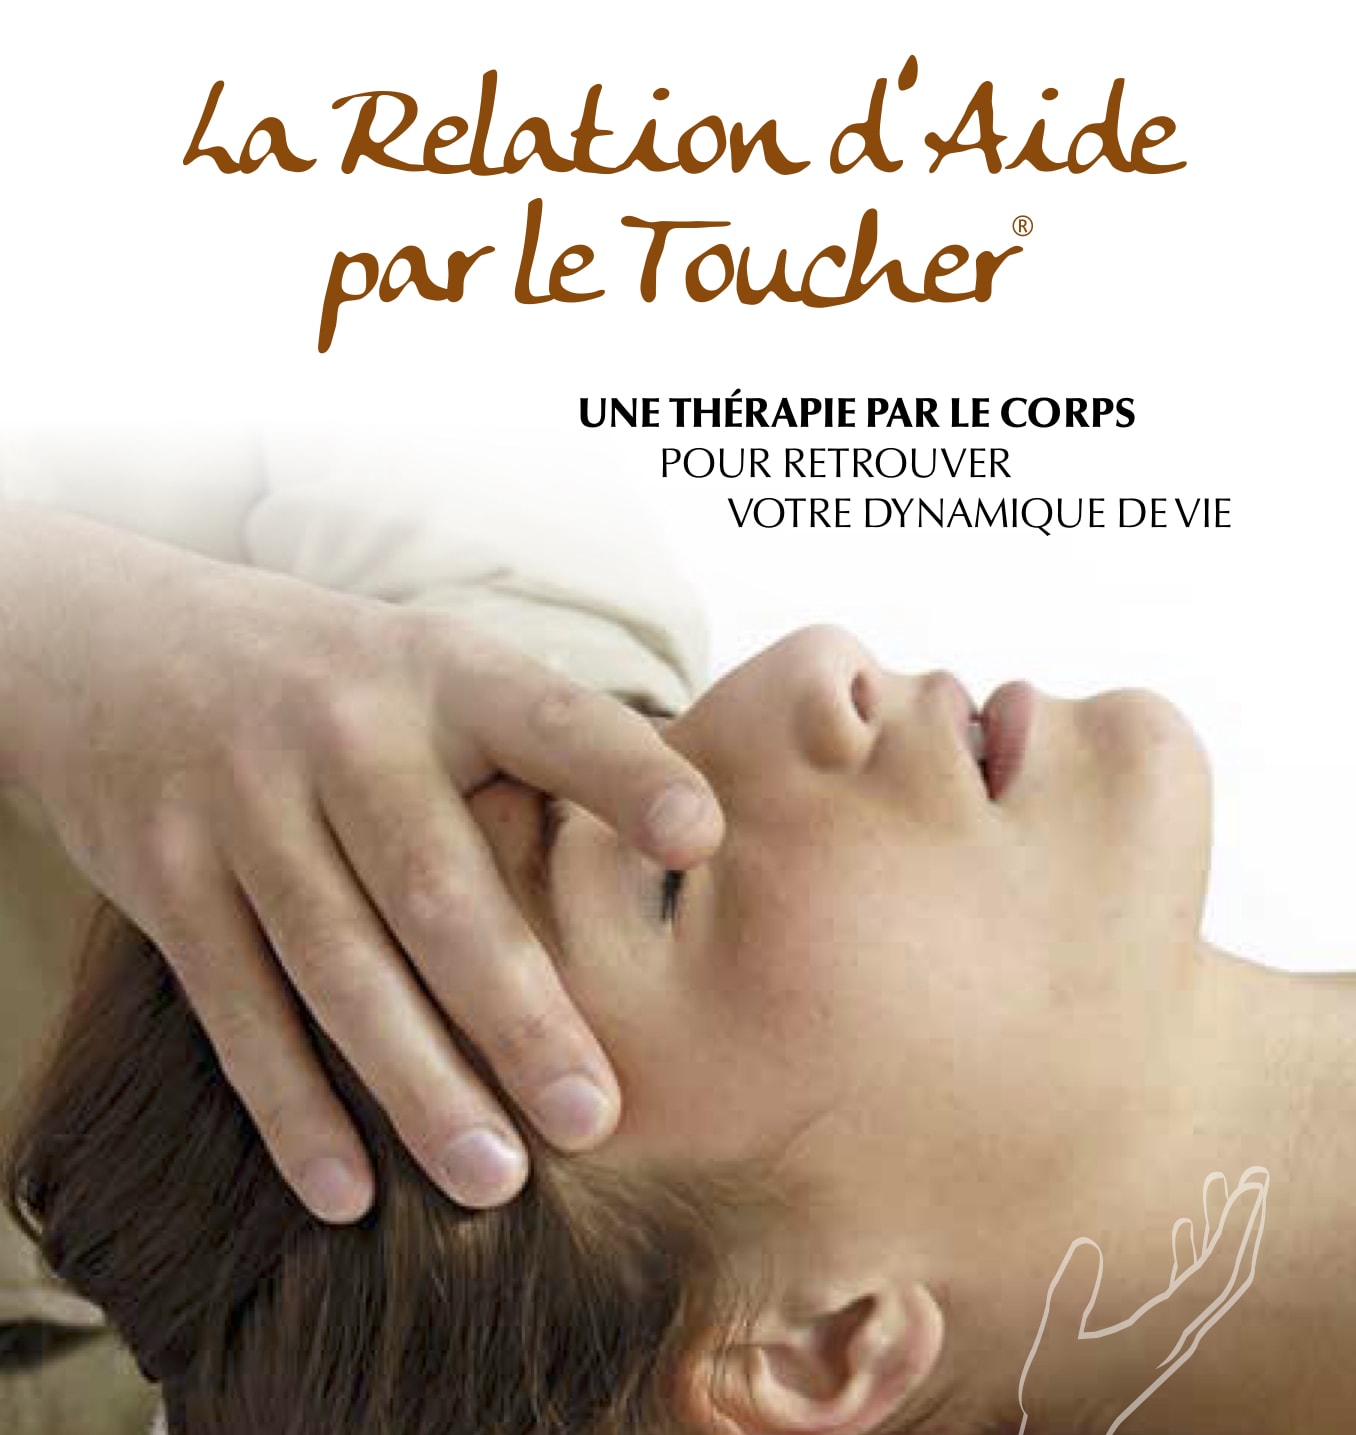 Le livre
                                                          : La Relation
                                                          d'Aide par le
                                                          Toucher - Une
                                                          thérapie par
                                                          le Corps pour
                                                          retrouver
                                                          votre
                                                          dynamique de
                                                          vie